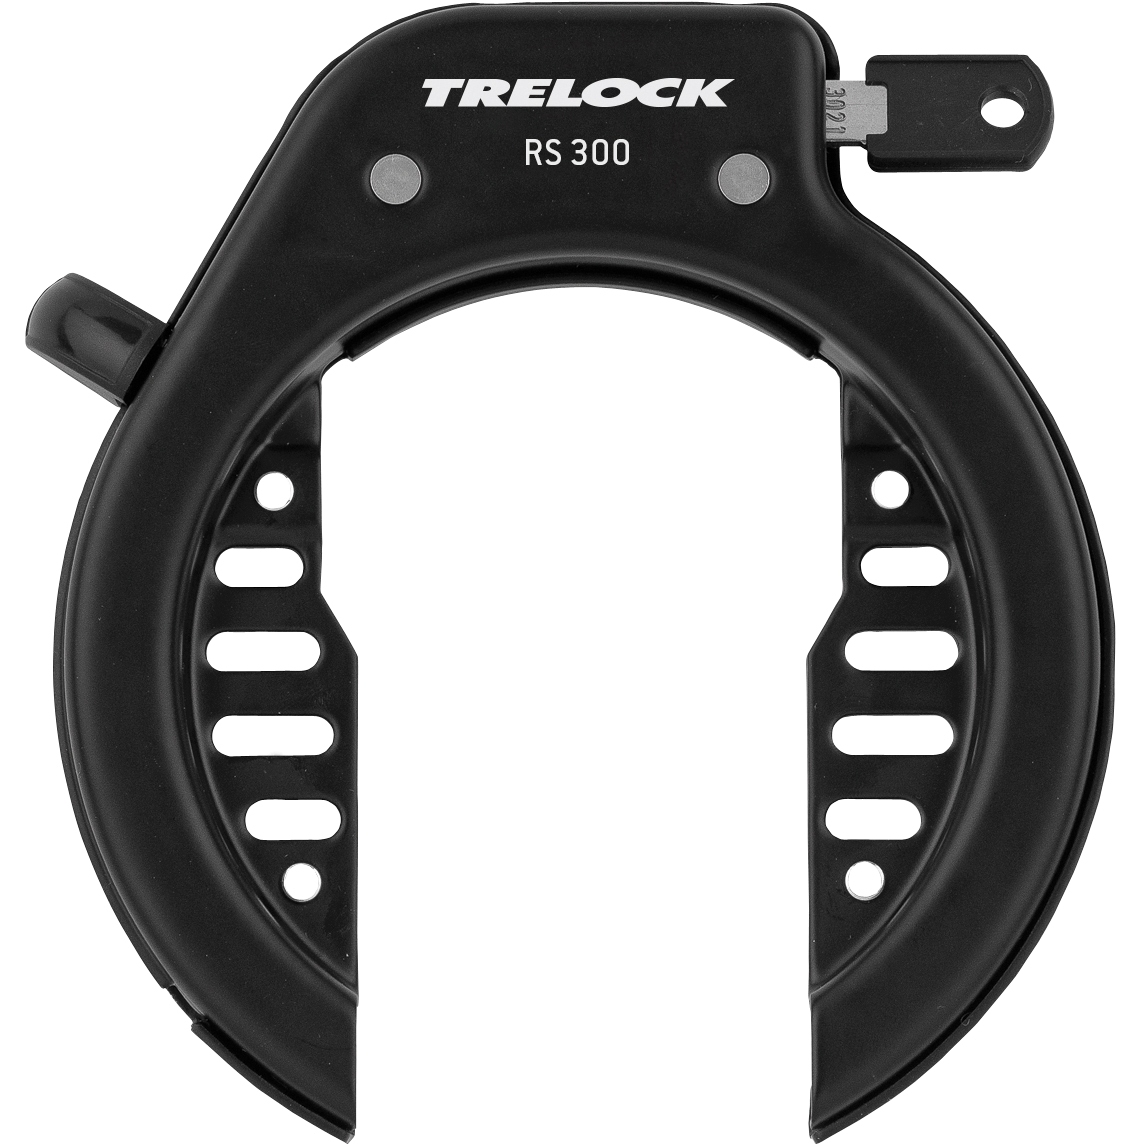 Productfoto van Trelock RS 300 AZ Flex Mount Frame Lock - black